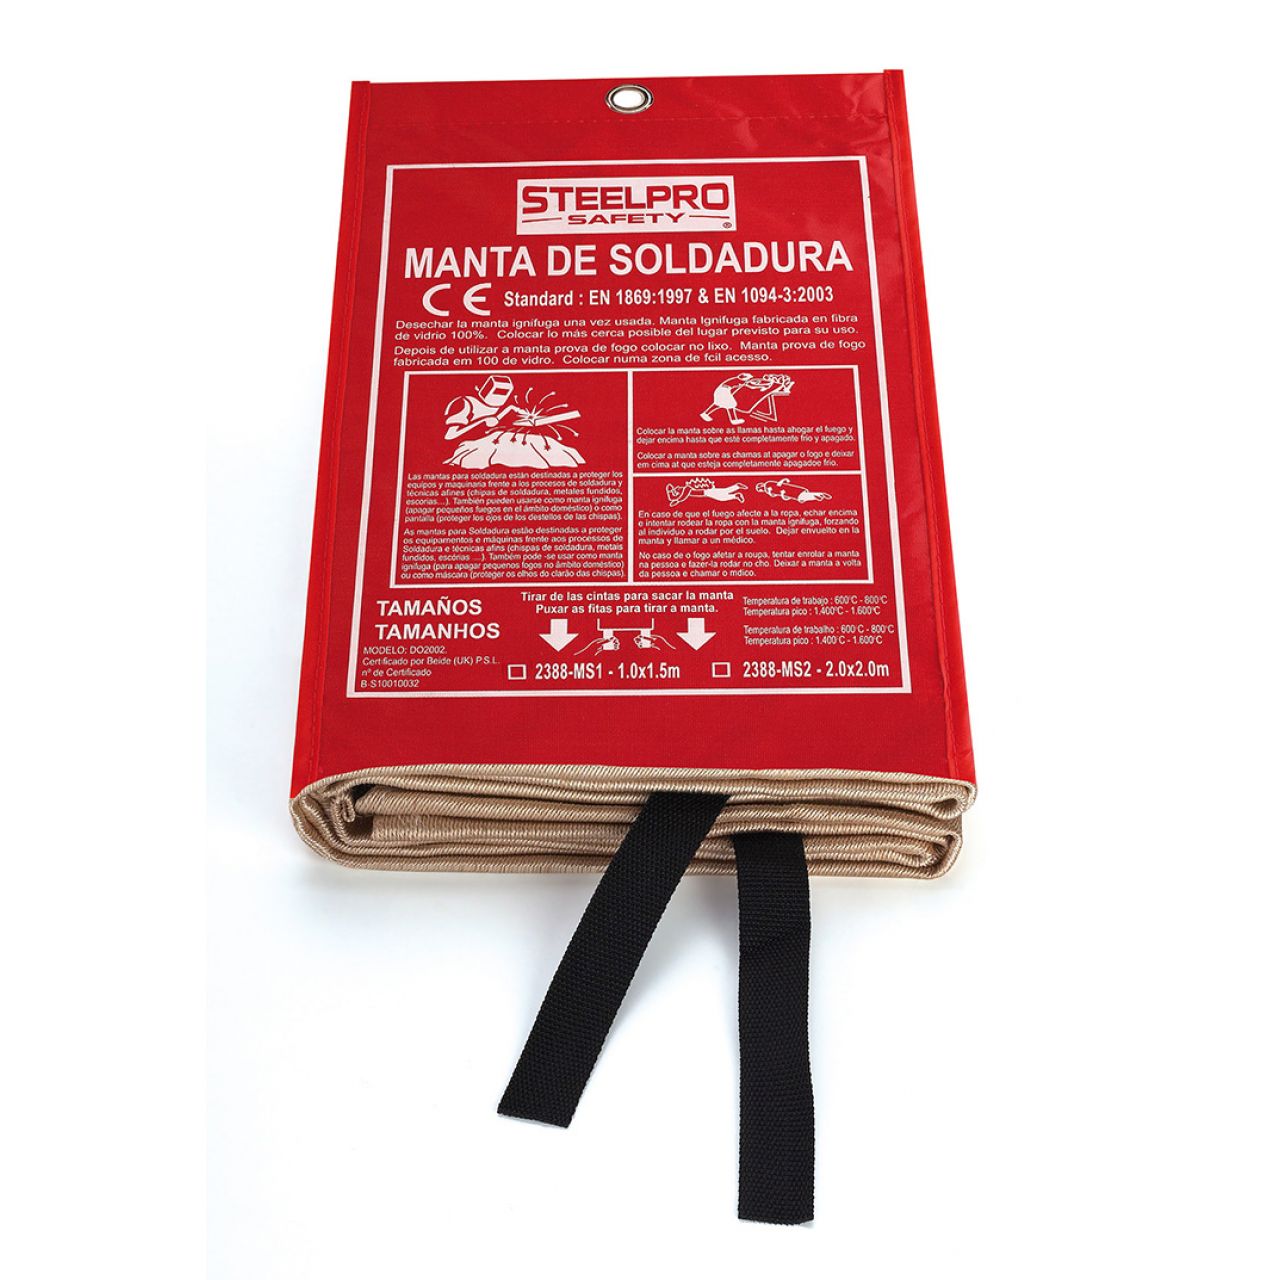 MANTA DE SOLDADURA 2x2 CM.